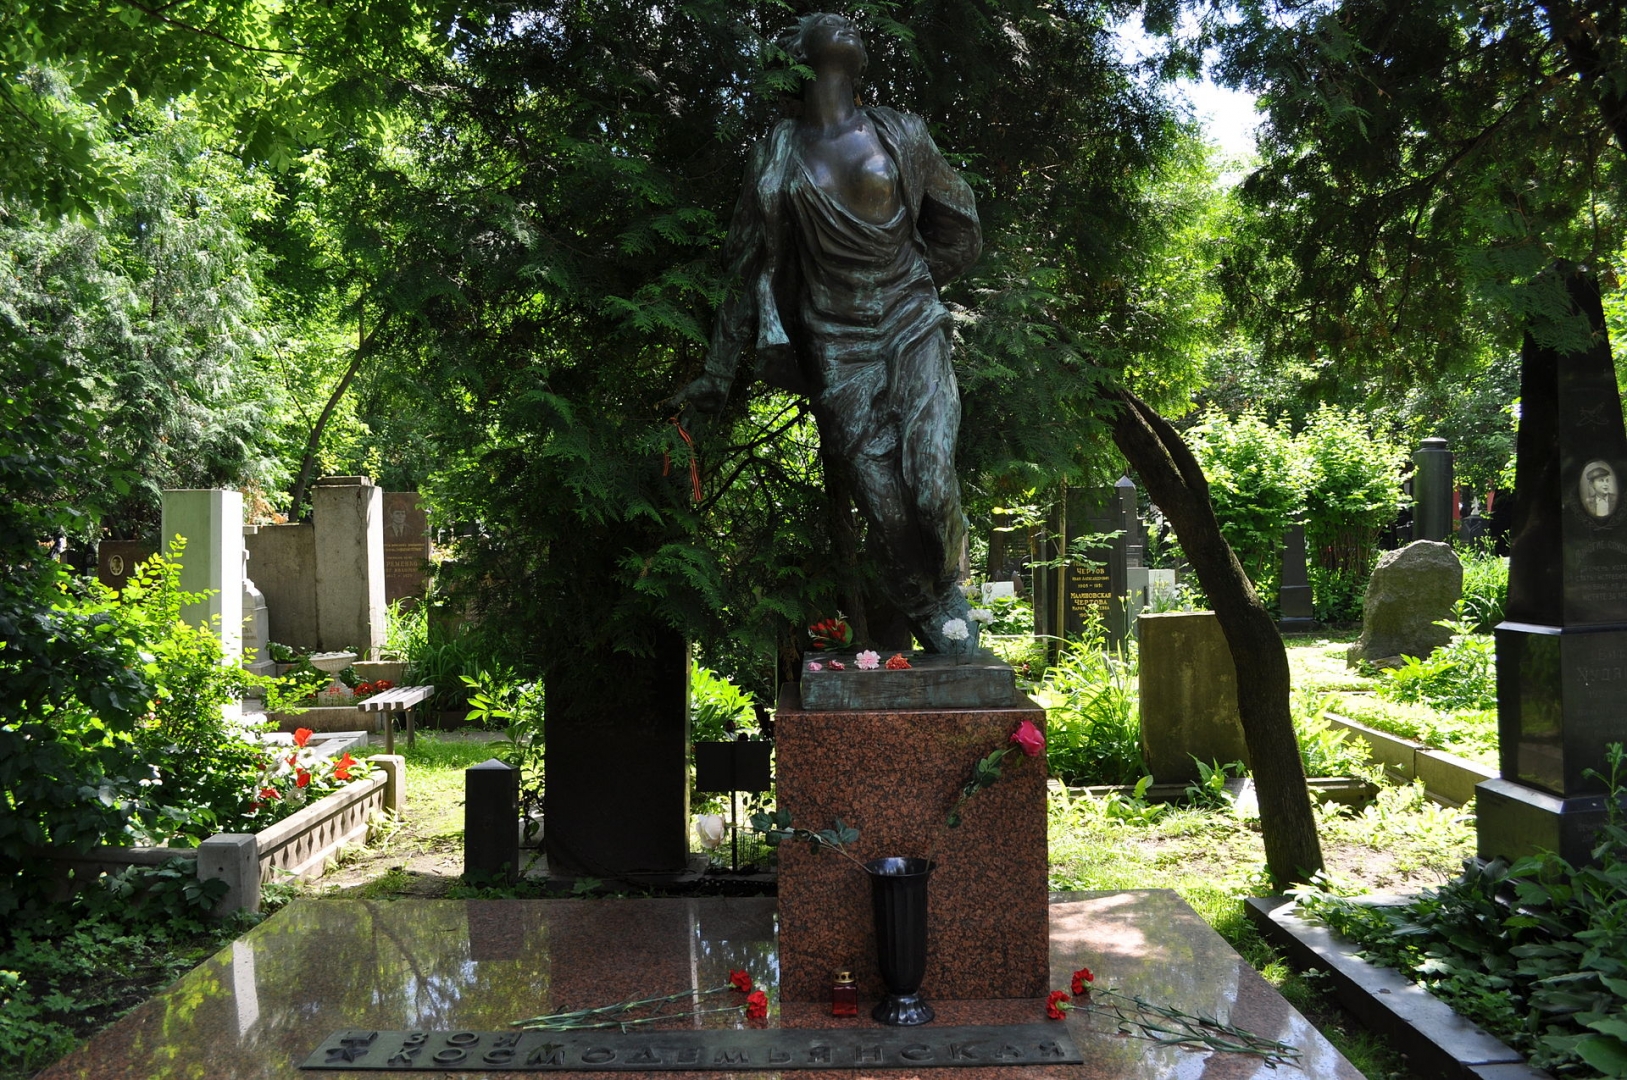 Памятники на могилу в новокузнецке фото